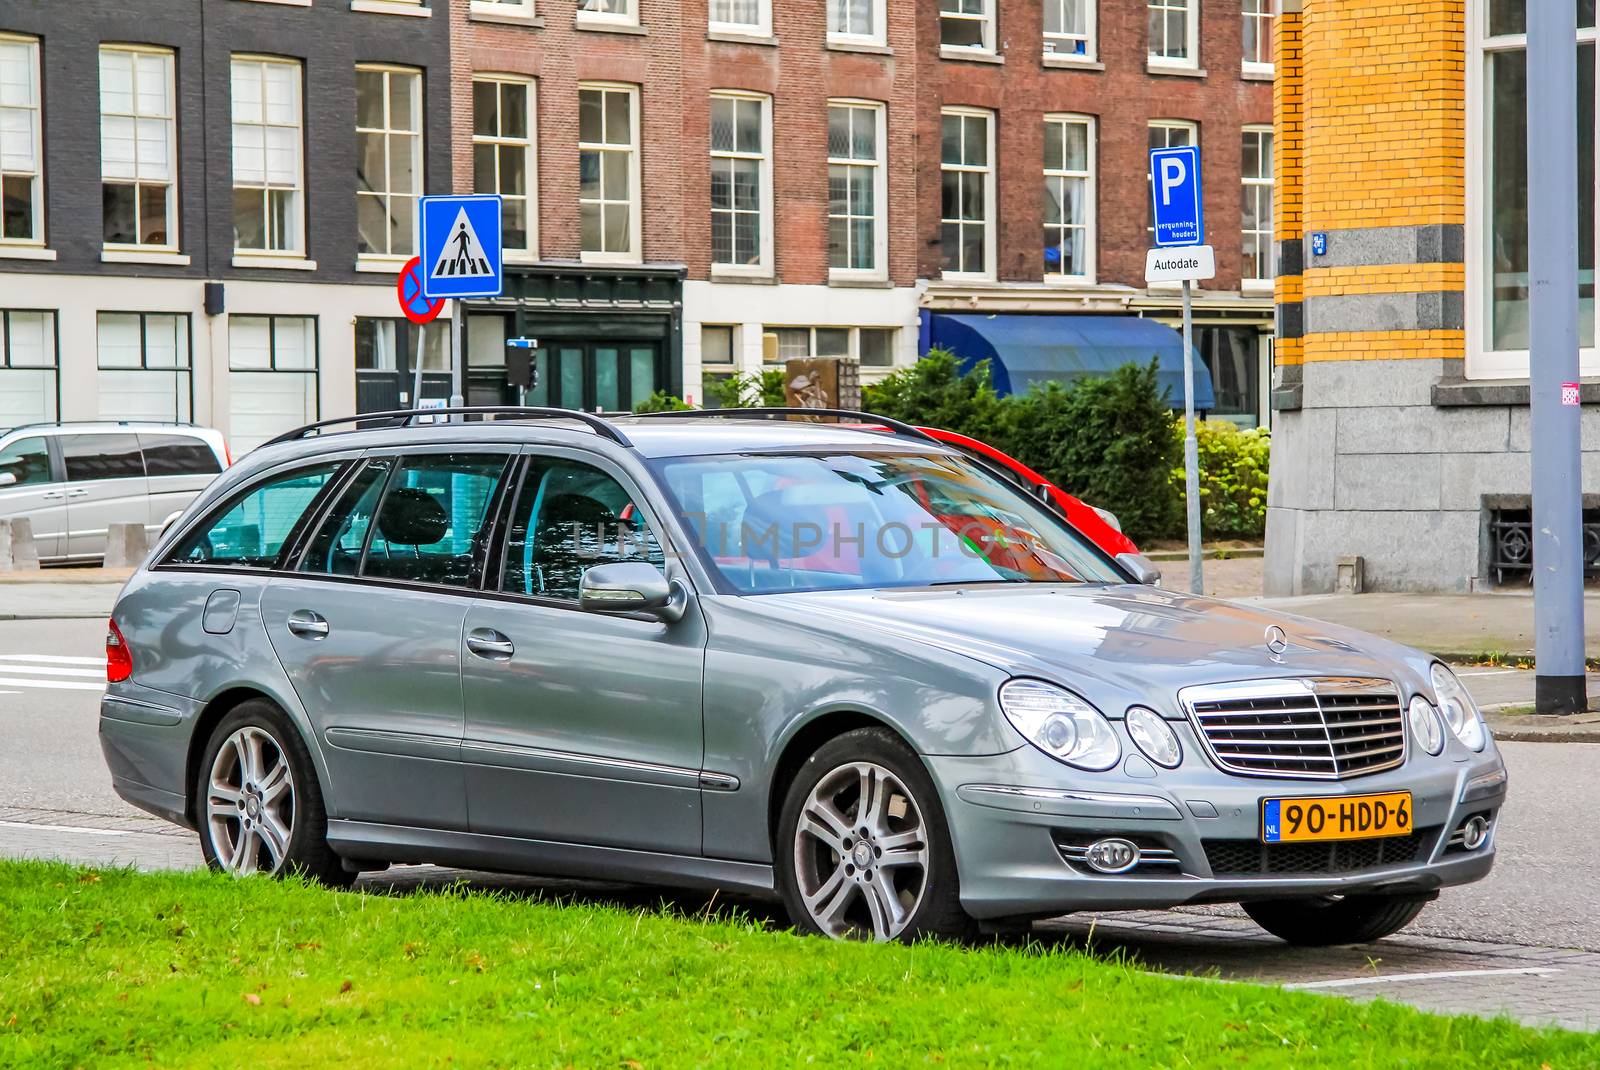 ROTTERDAM, NETHERLANDS - AUGUST 9, 2014: Motor car Mercedes-Benz S211 E-class at the city street.